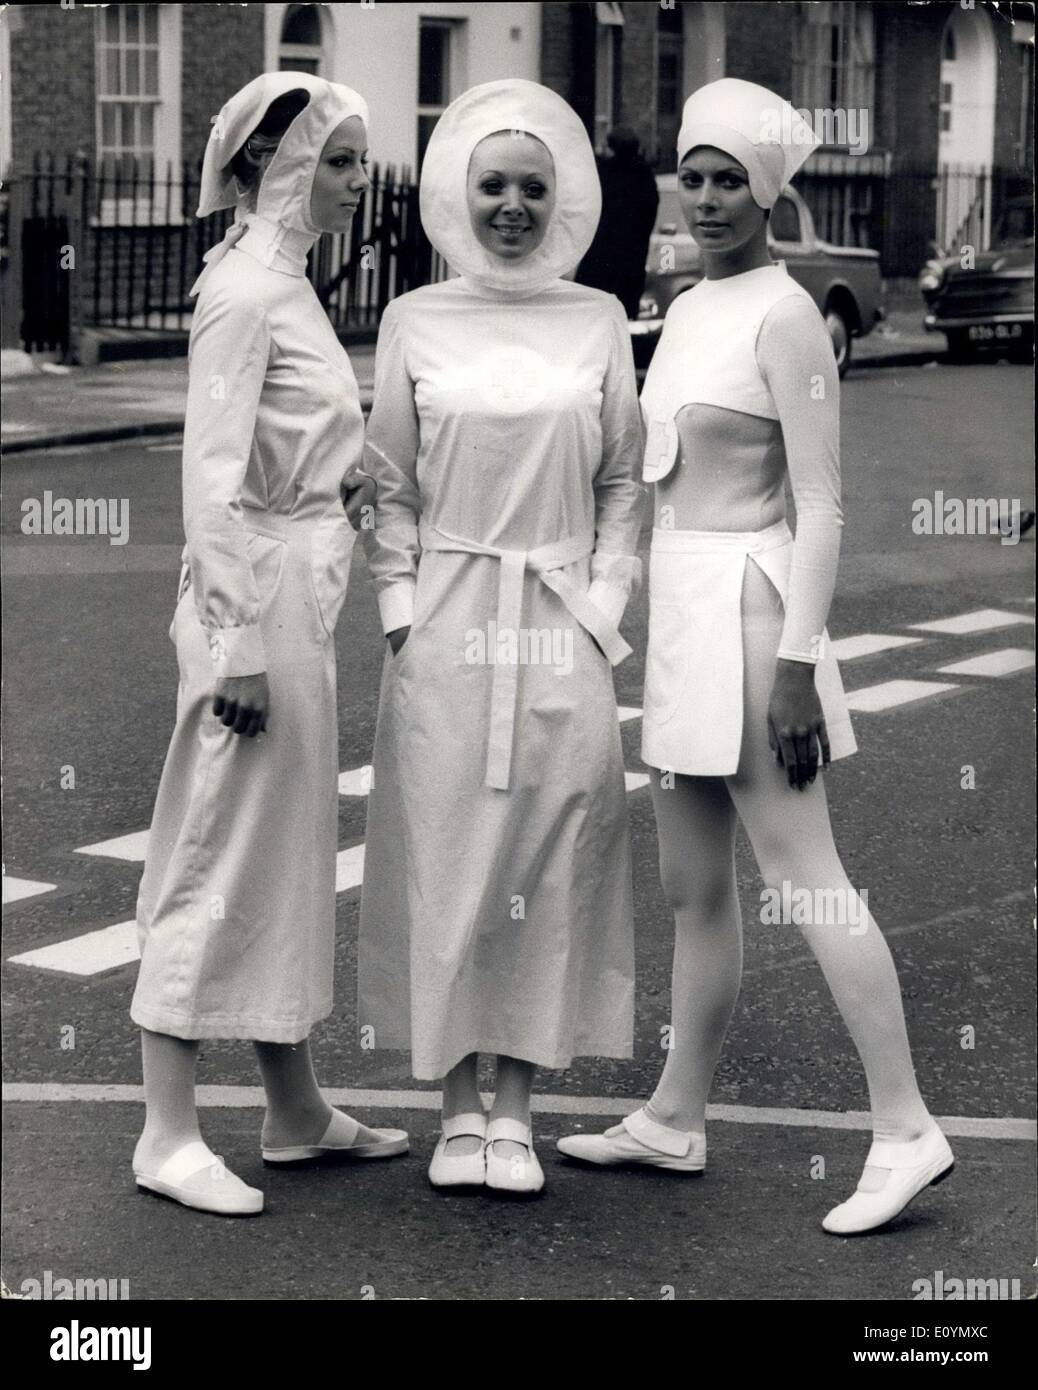 25 ottobre 1970 - Pierre Cardin è di nuovo divise per infermieri mostra oggi in questa anteprima di Londra mostra infermieristica.: design rivoluzionari per le nuove divise per gli infermieri di Pierre Cardin, sono stati mostrati all'odierna premere anteprima del London Assistenza infermieristica mostra, che si apre a Seymour Hall di Londra, W.1. Domani l'uso di colori è una deliberata spostare da Cardin per alleggerire le uniformi della guerra le uniformi e la considerazione principale in ogni caso è stato il bisogno di libertà e di igiene. In tal modo le uniformi sono stati progettati per garantire la massima libertà di movimento. Mostra fotografica Foto Stock